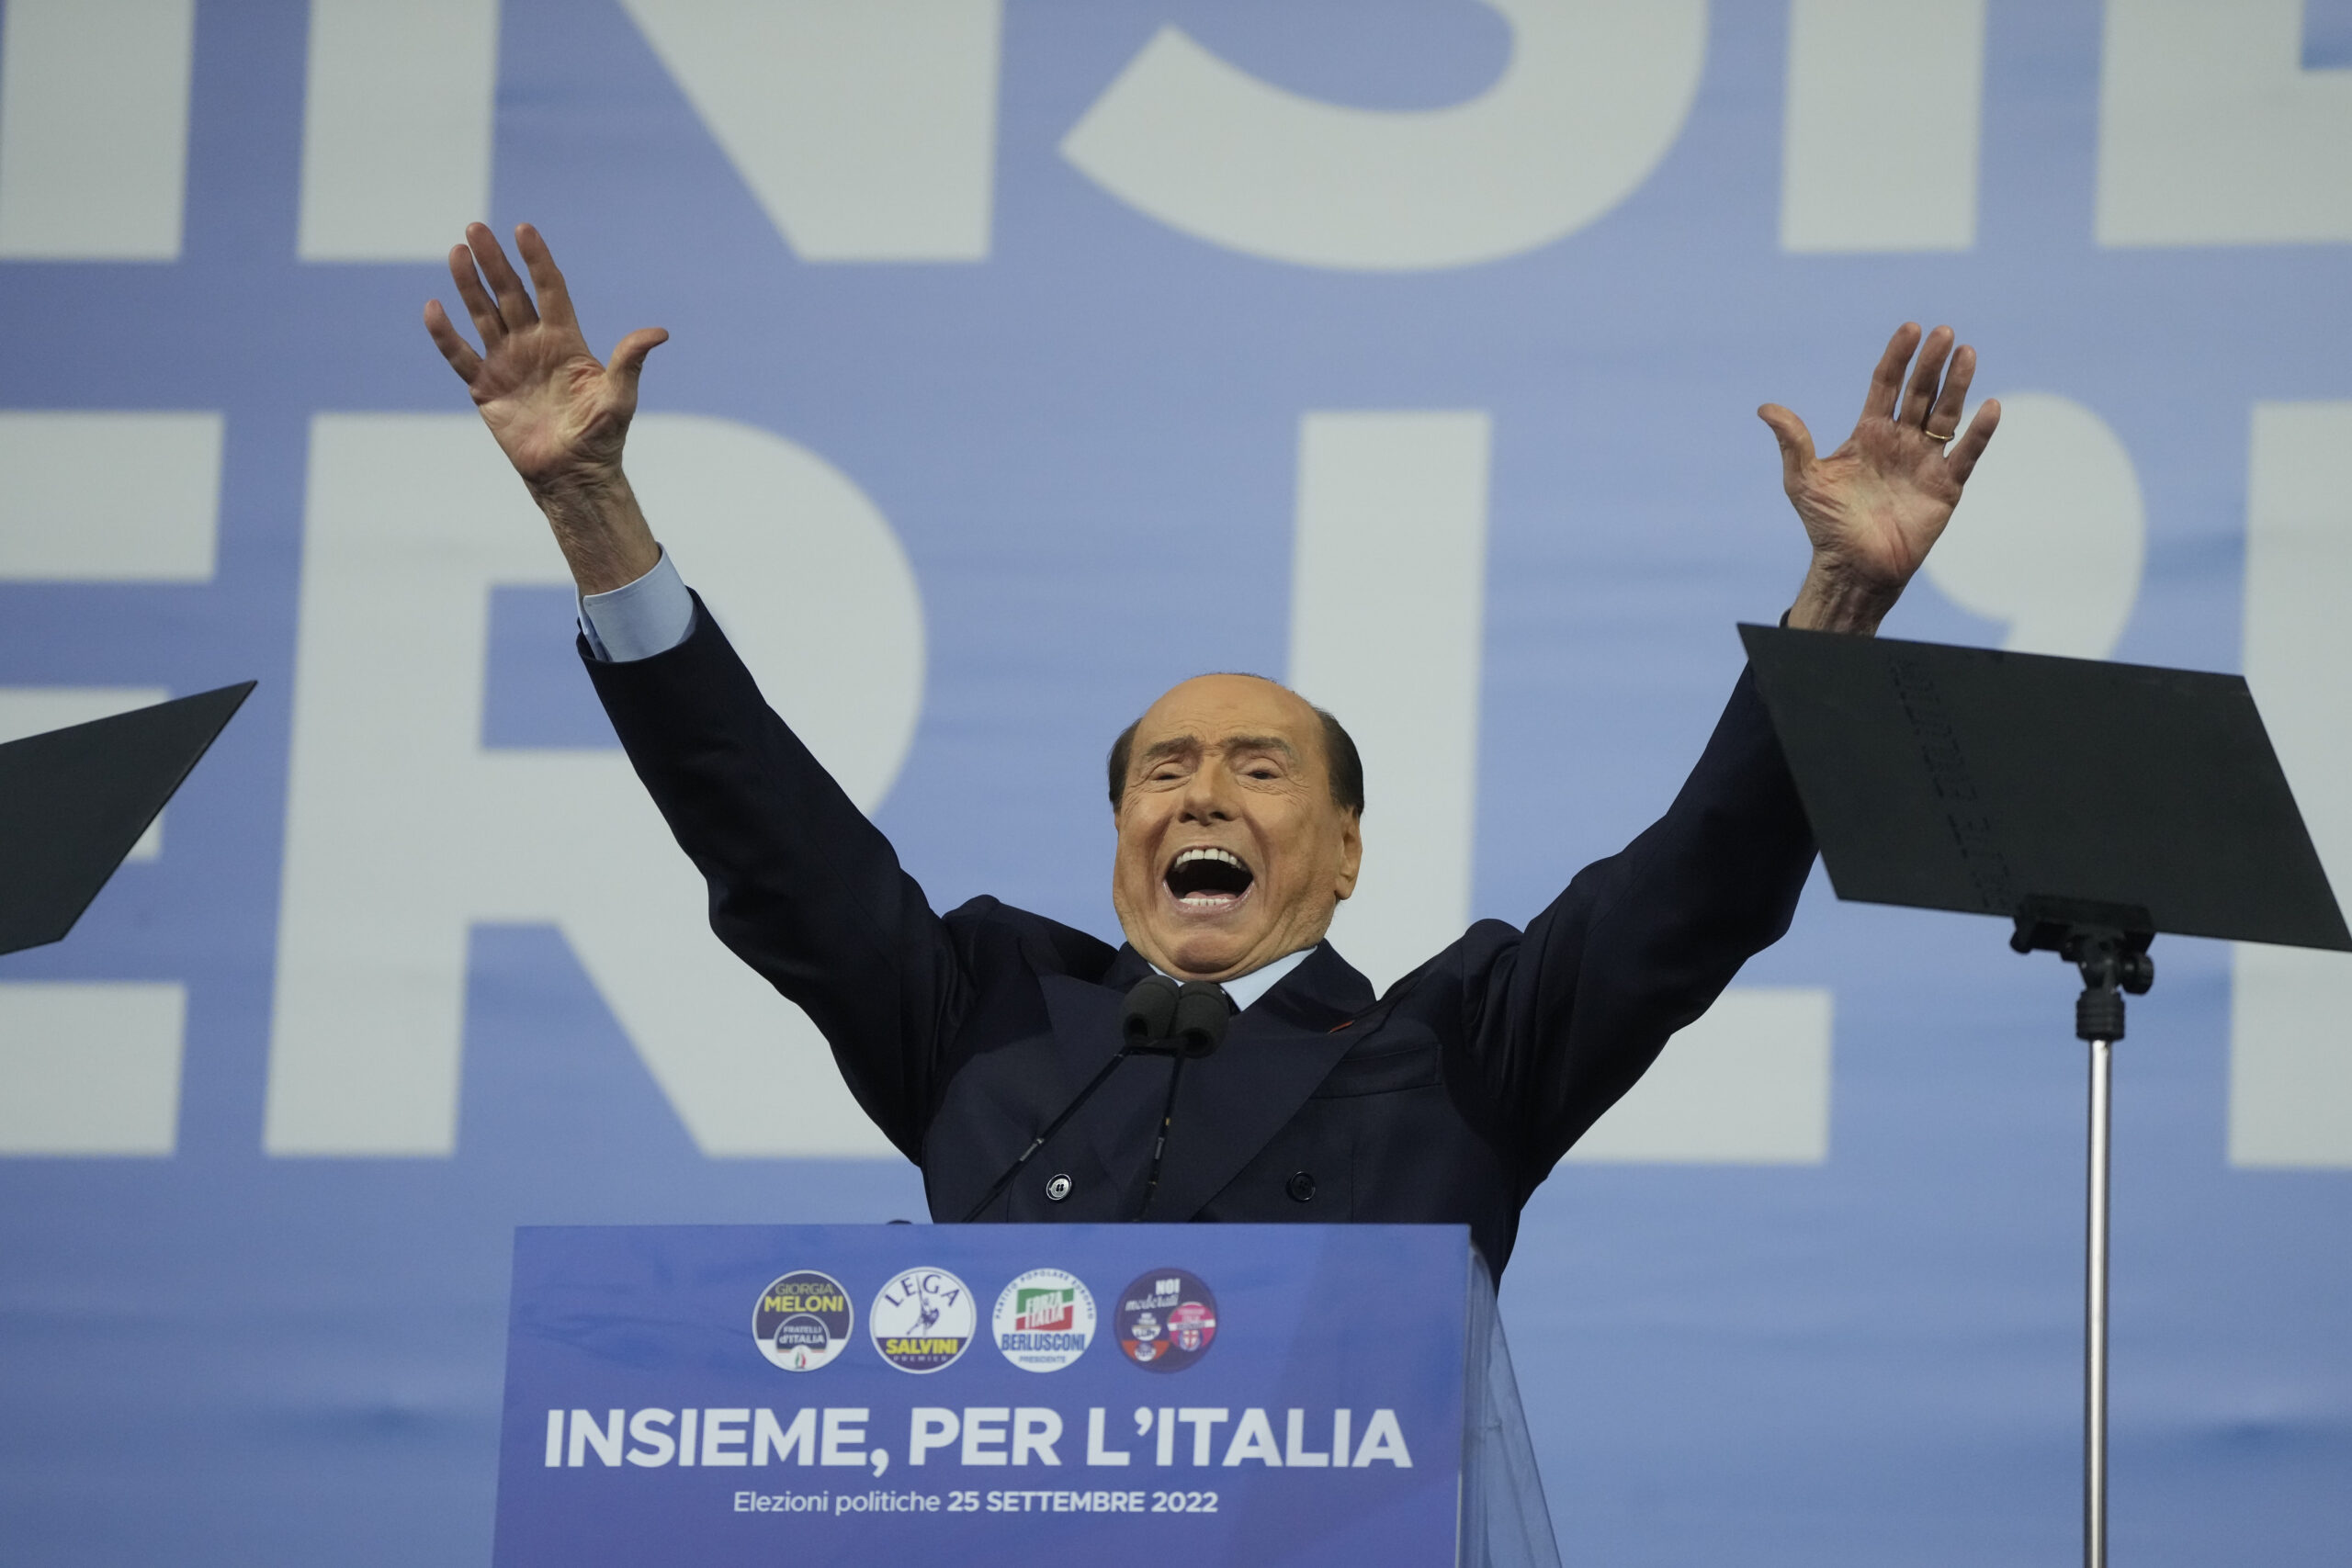 Σίλβιο Μπερλουσκόνι: Ο «Καβαλιέρε» που άλλαξε την Ιταλία, οι αμφιλεγόμενες στιγμές του και η αγάπη του για τη Μίλαν